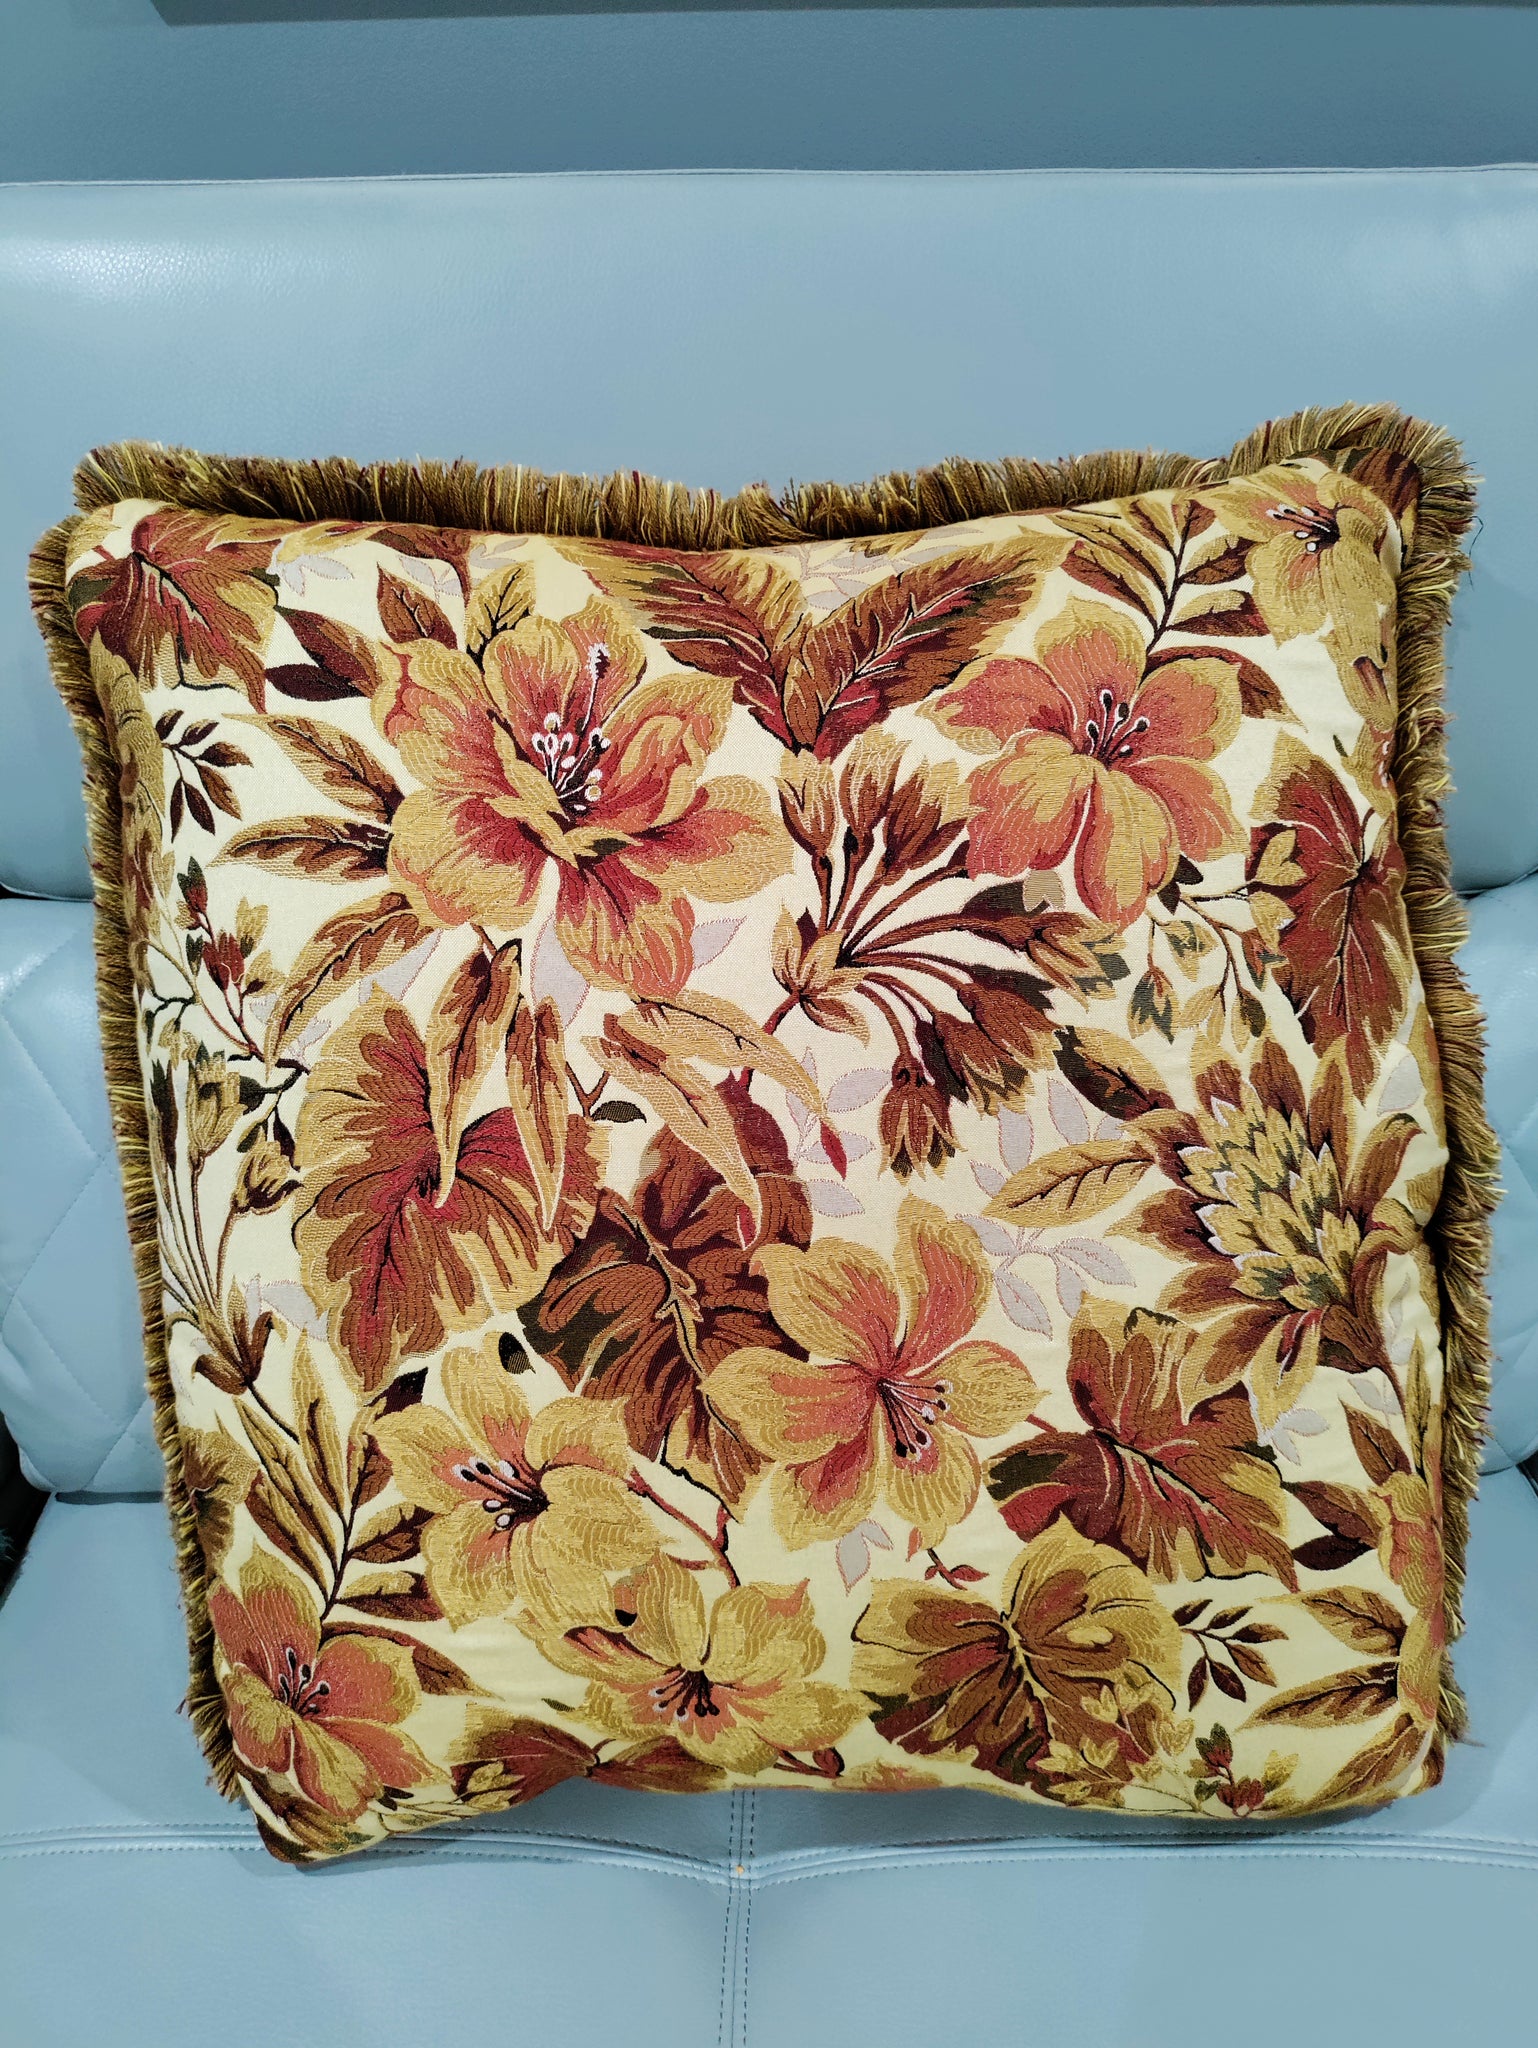 Flower accent pillows